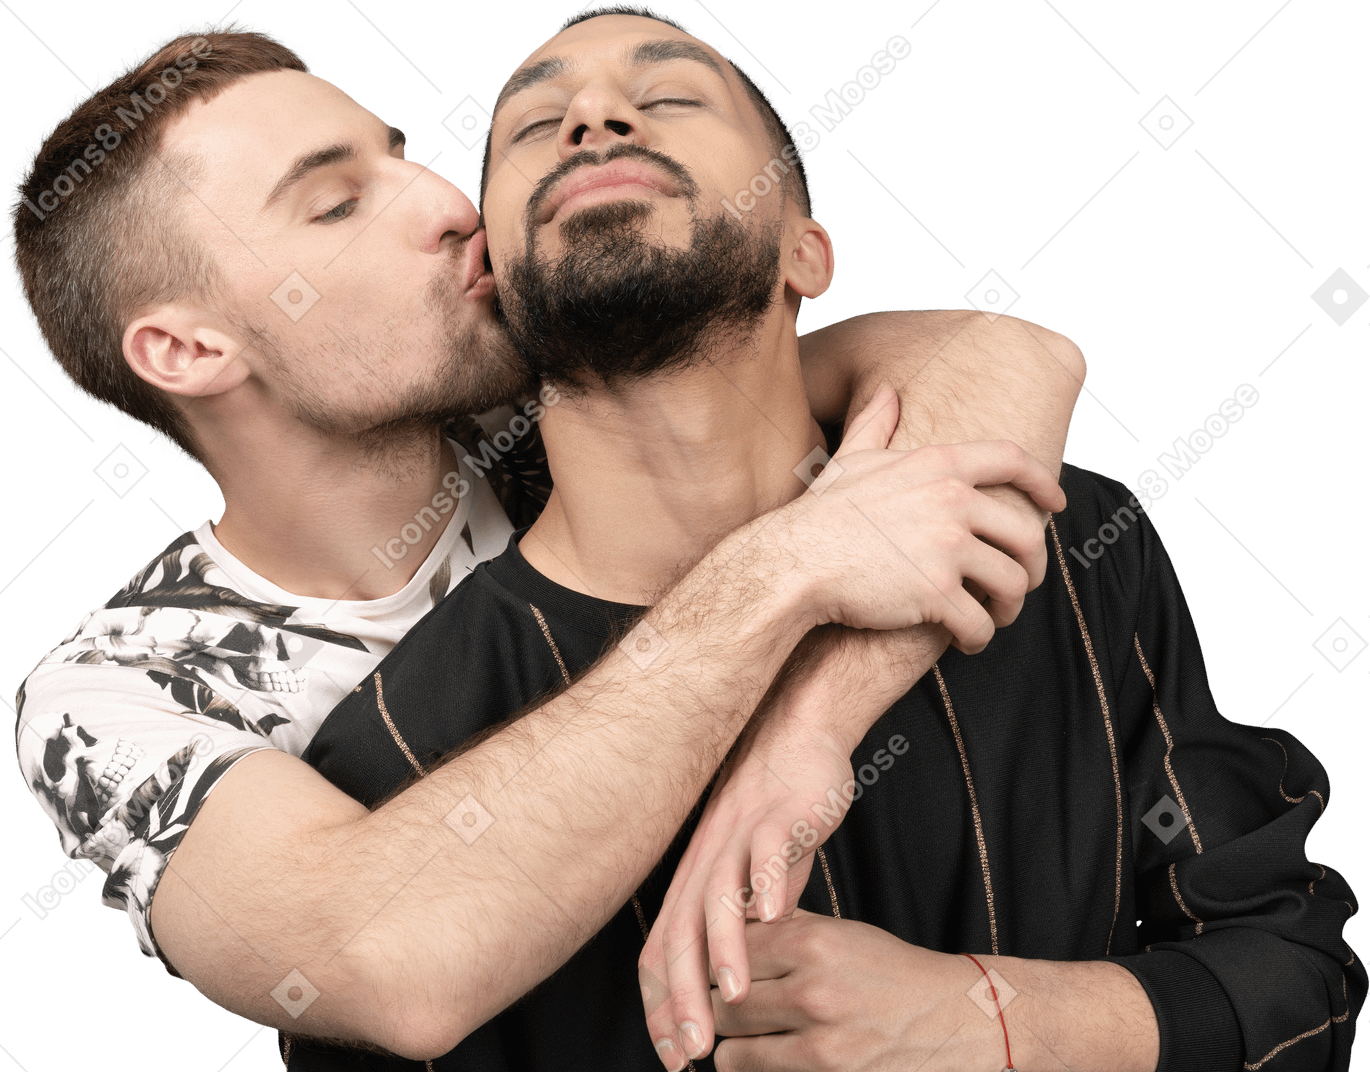 Nahaufnahme eines jungen kaukasischen mannes, der seinen partner umarmt und küsst